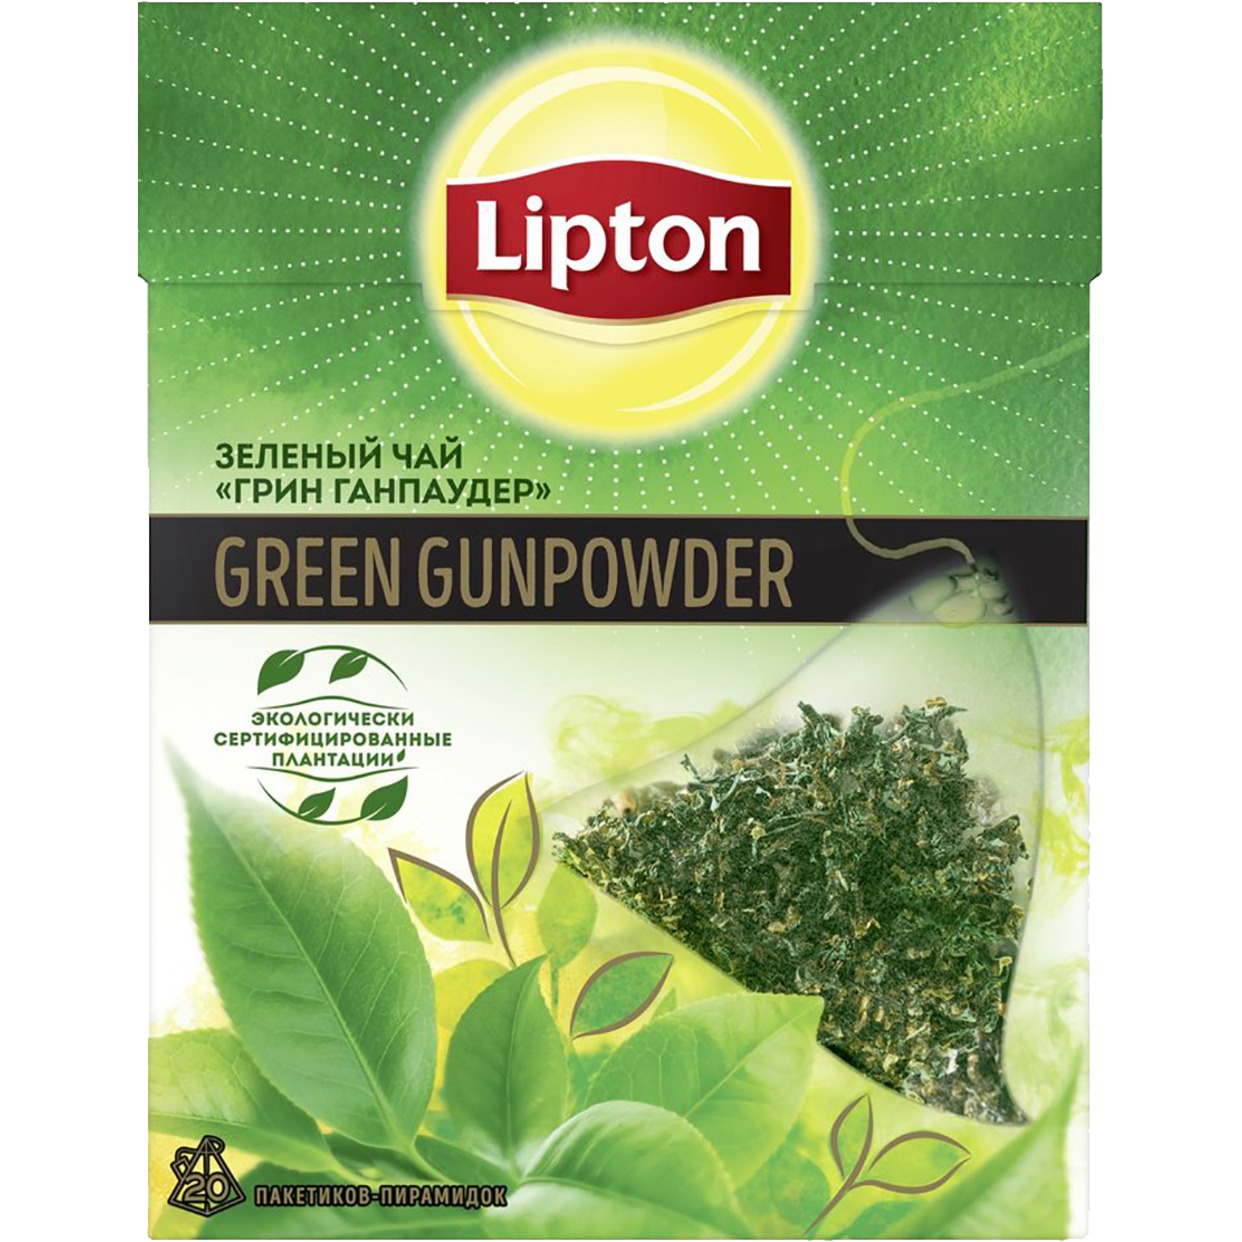 Чай зеленый Lipton Green Gunpowder 20 пак по акции в Пятерочке